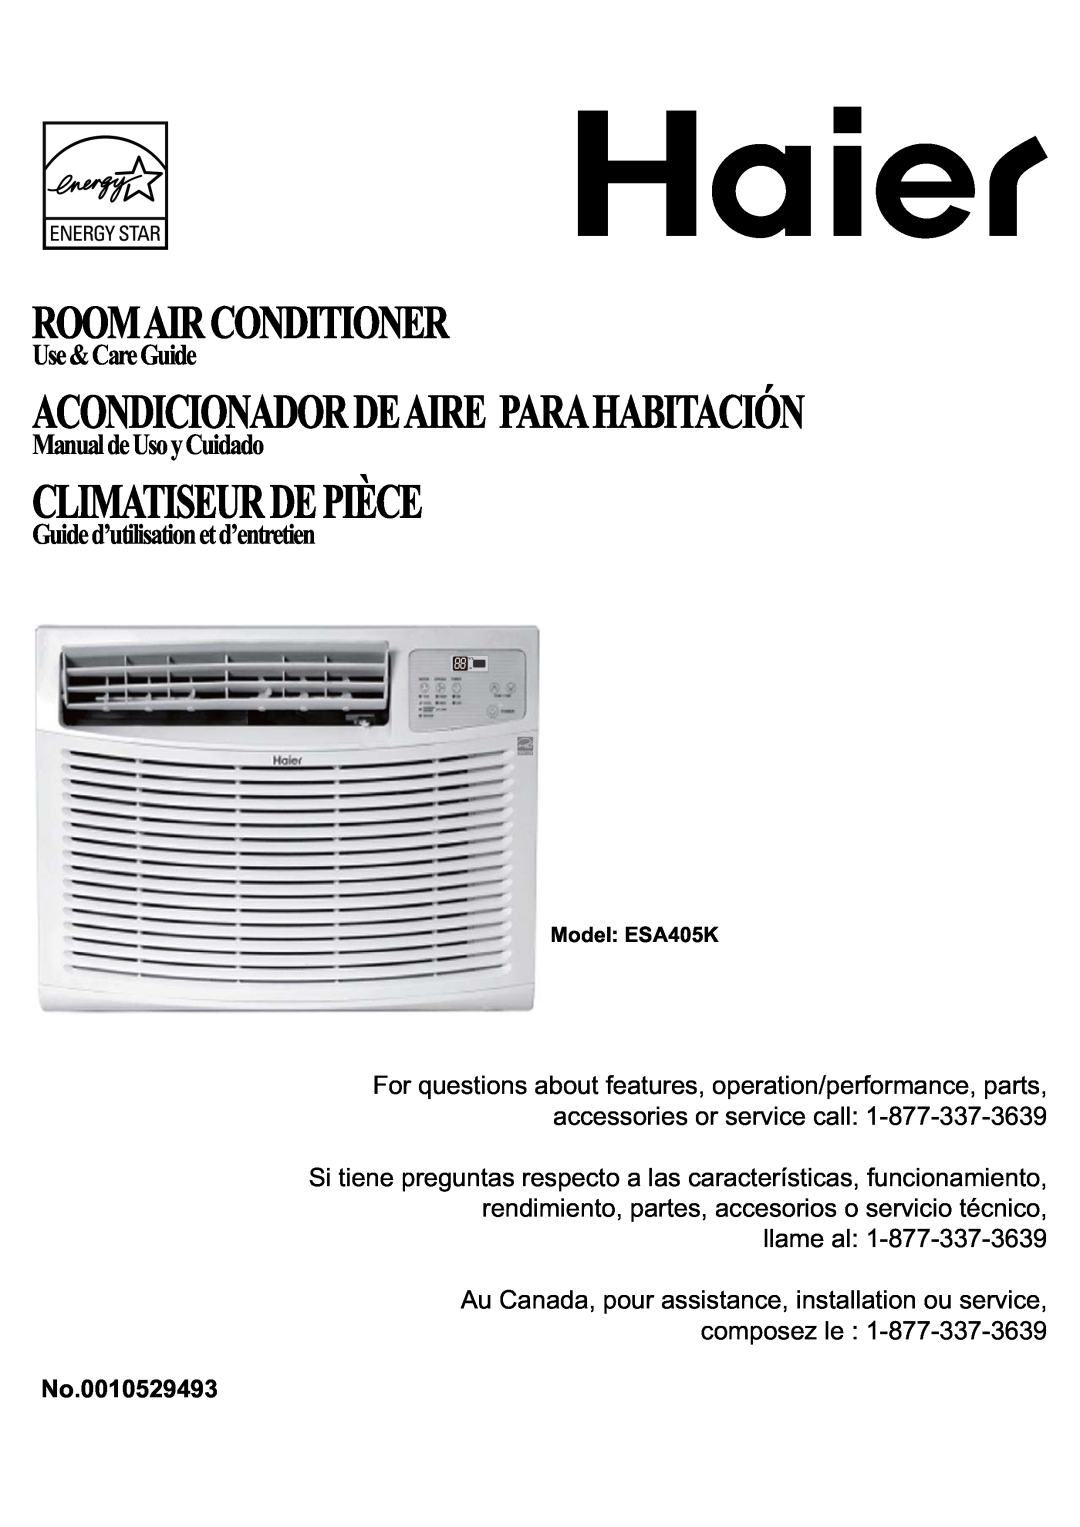 Haier ESA405K manual Climatiseurdepièce, Roomairconditioner, Acondicionadordeaire Parahabitación, Use&CareGuide 